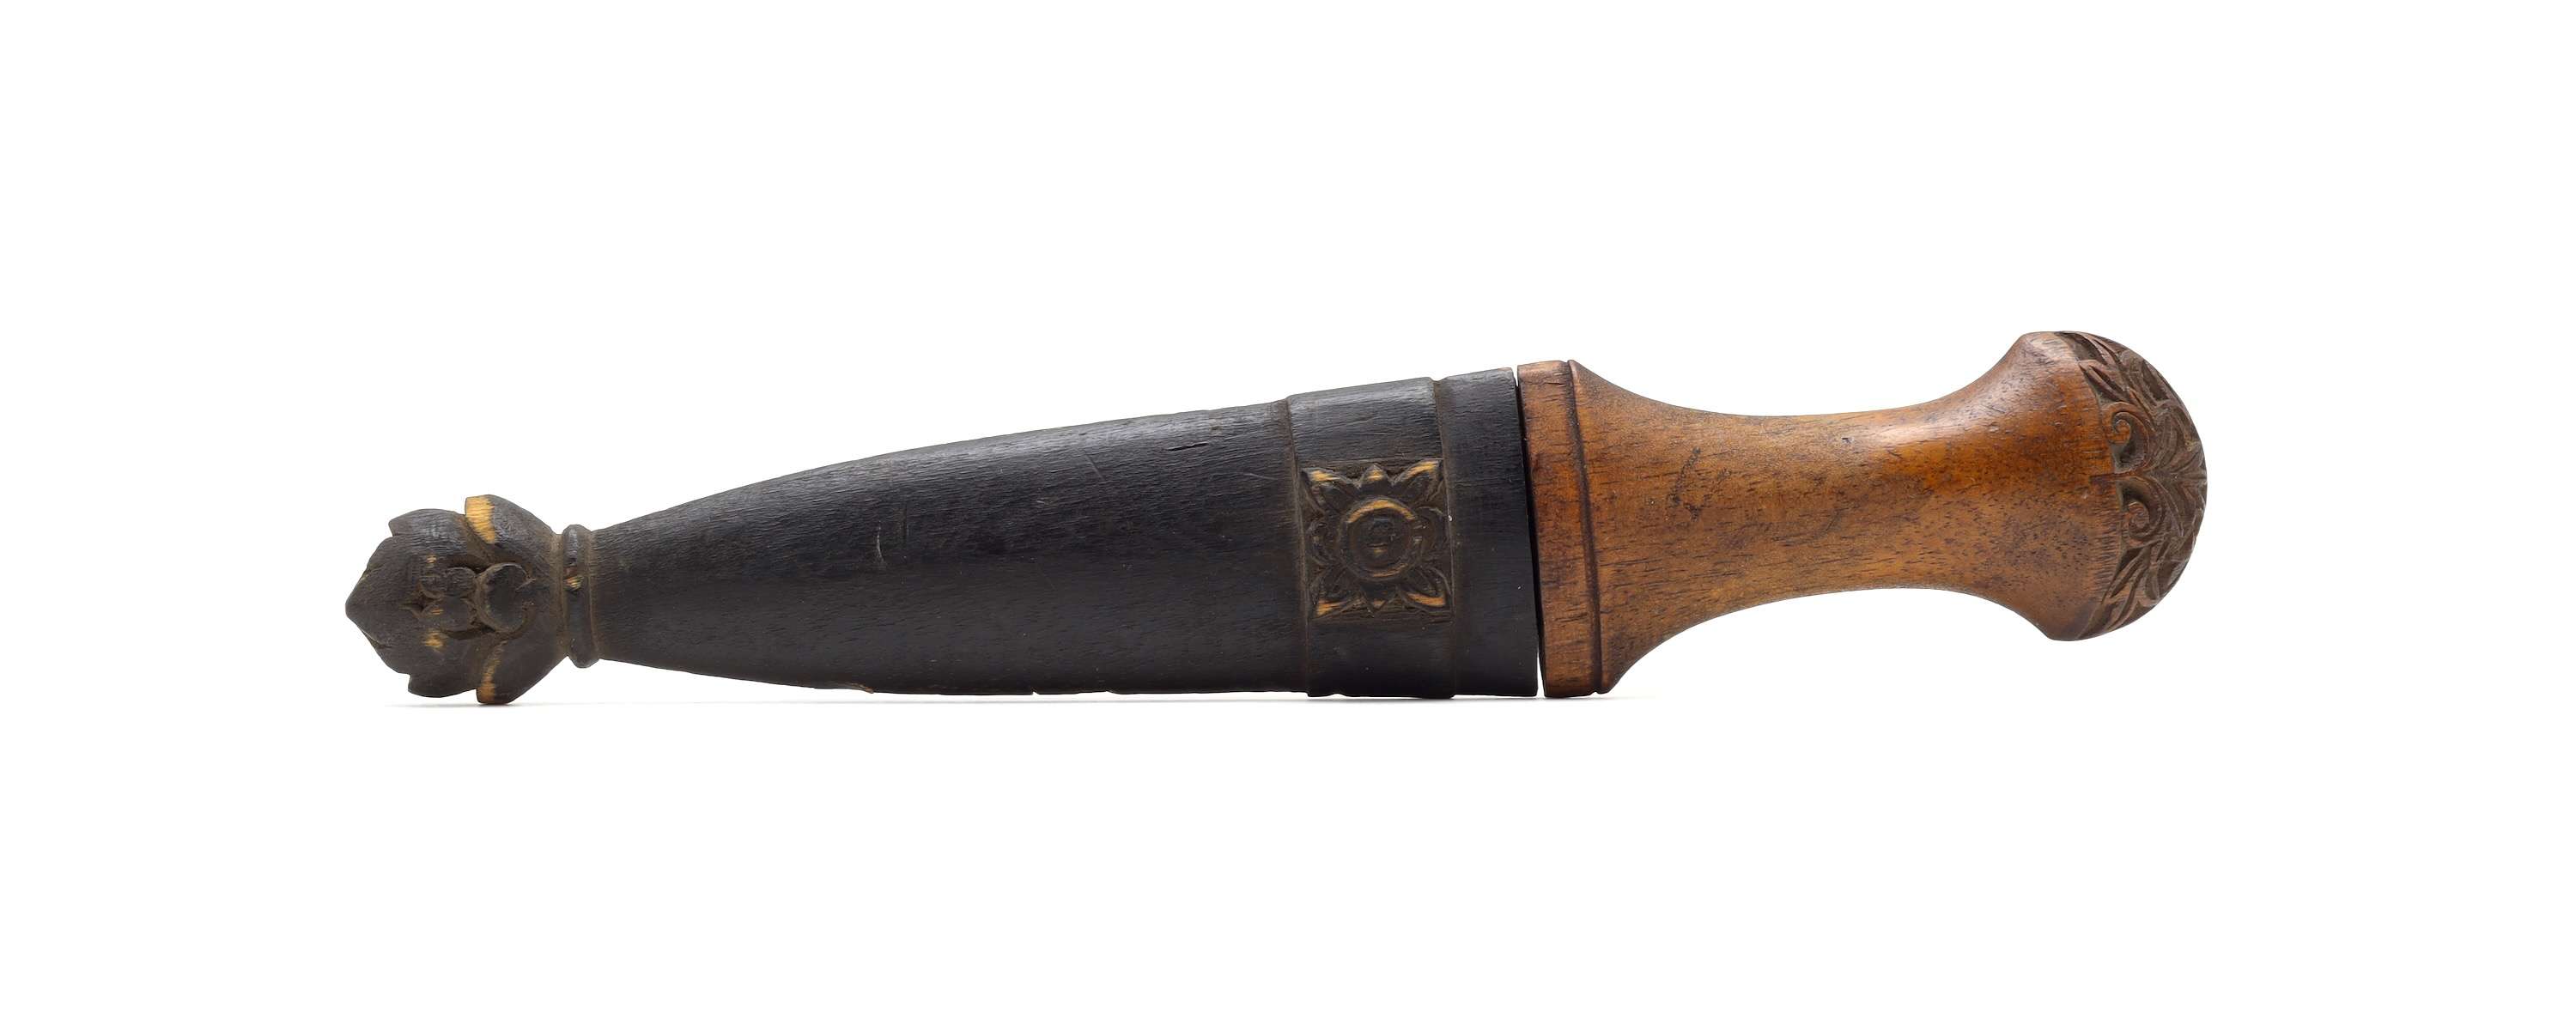 Rare beladau lebar dagger from southern Kalimantan